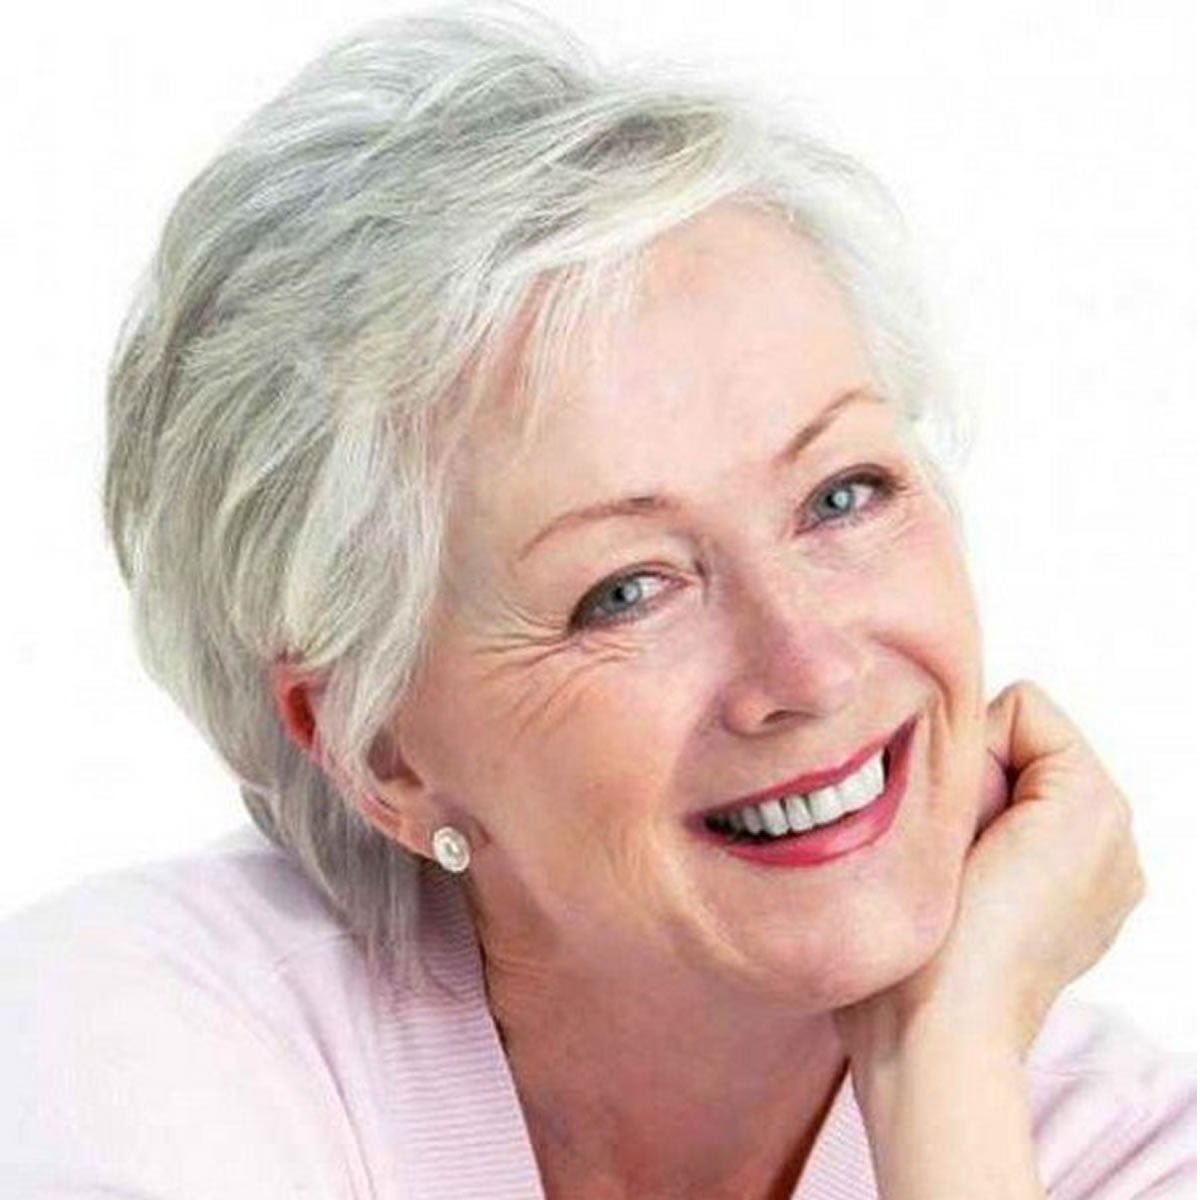 Фото на аватарку женщина 50 лет